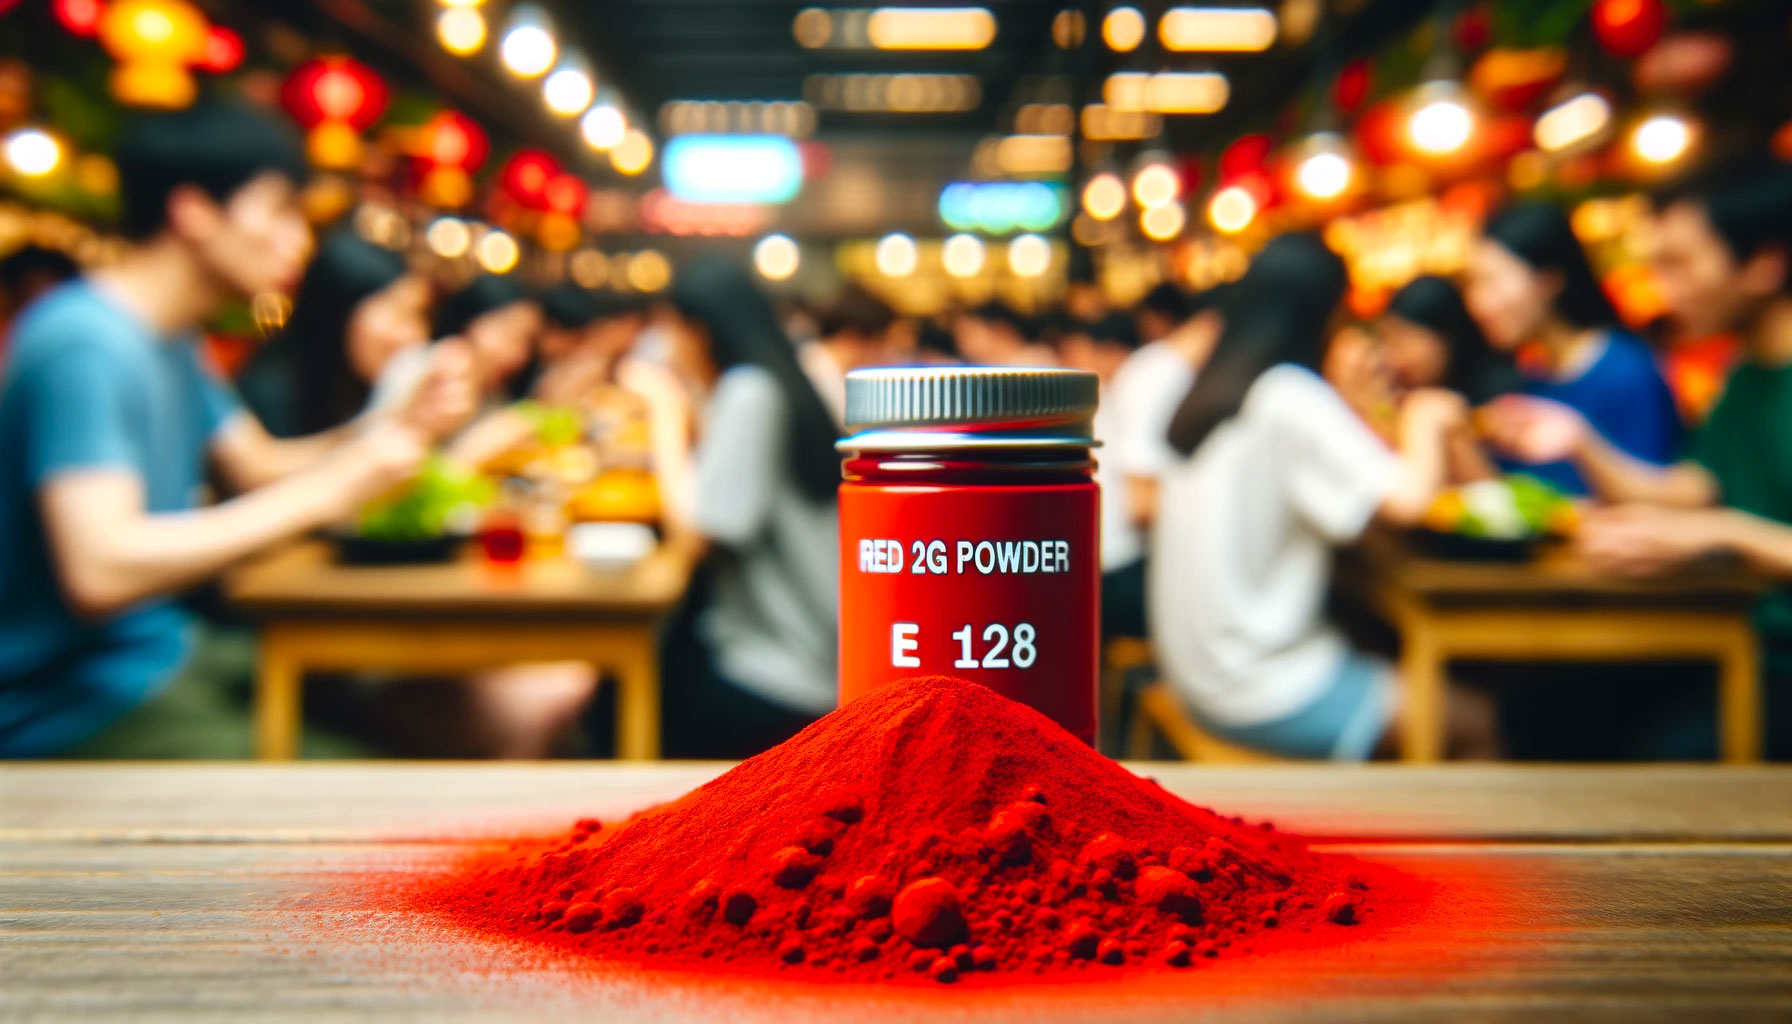  Red 2G powder (E128)